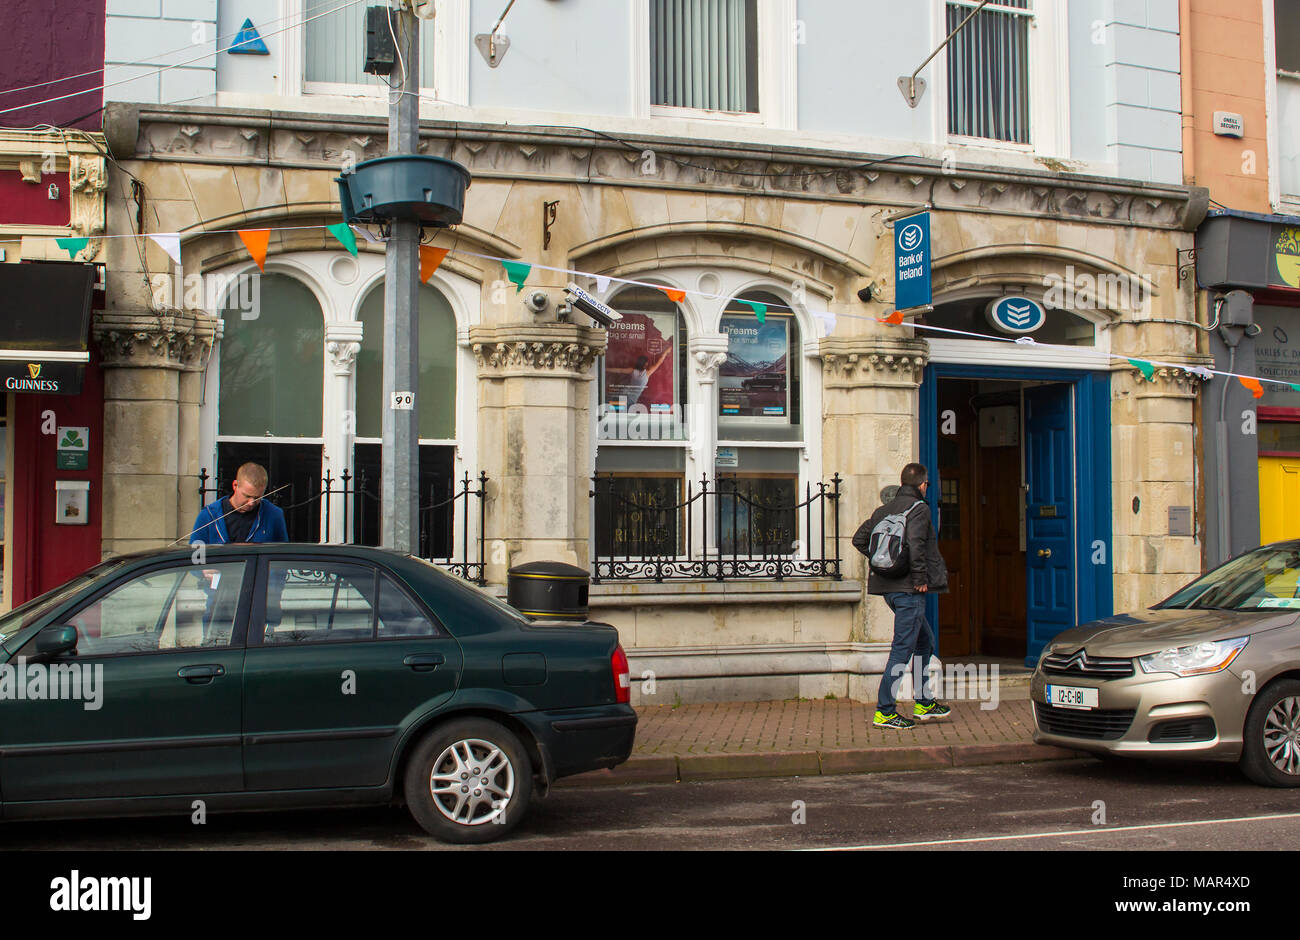 Une succursale de la Banque d'Irlande sur la rue principale de Cobh, dans le comté de Cork Irlande Banque D'Images